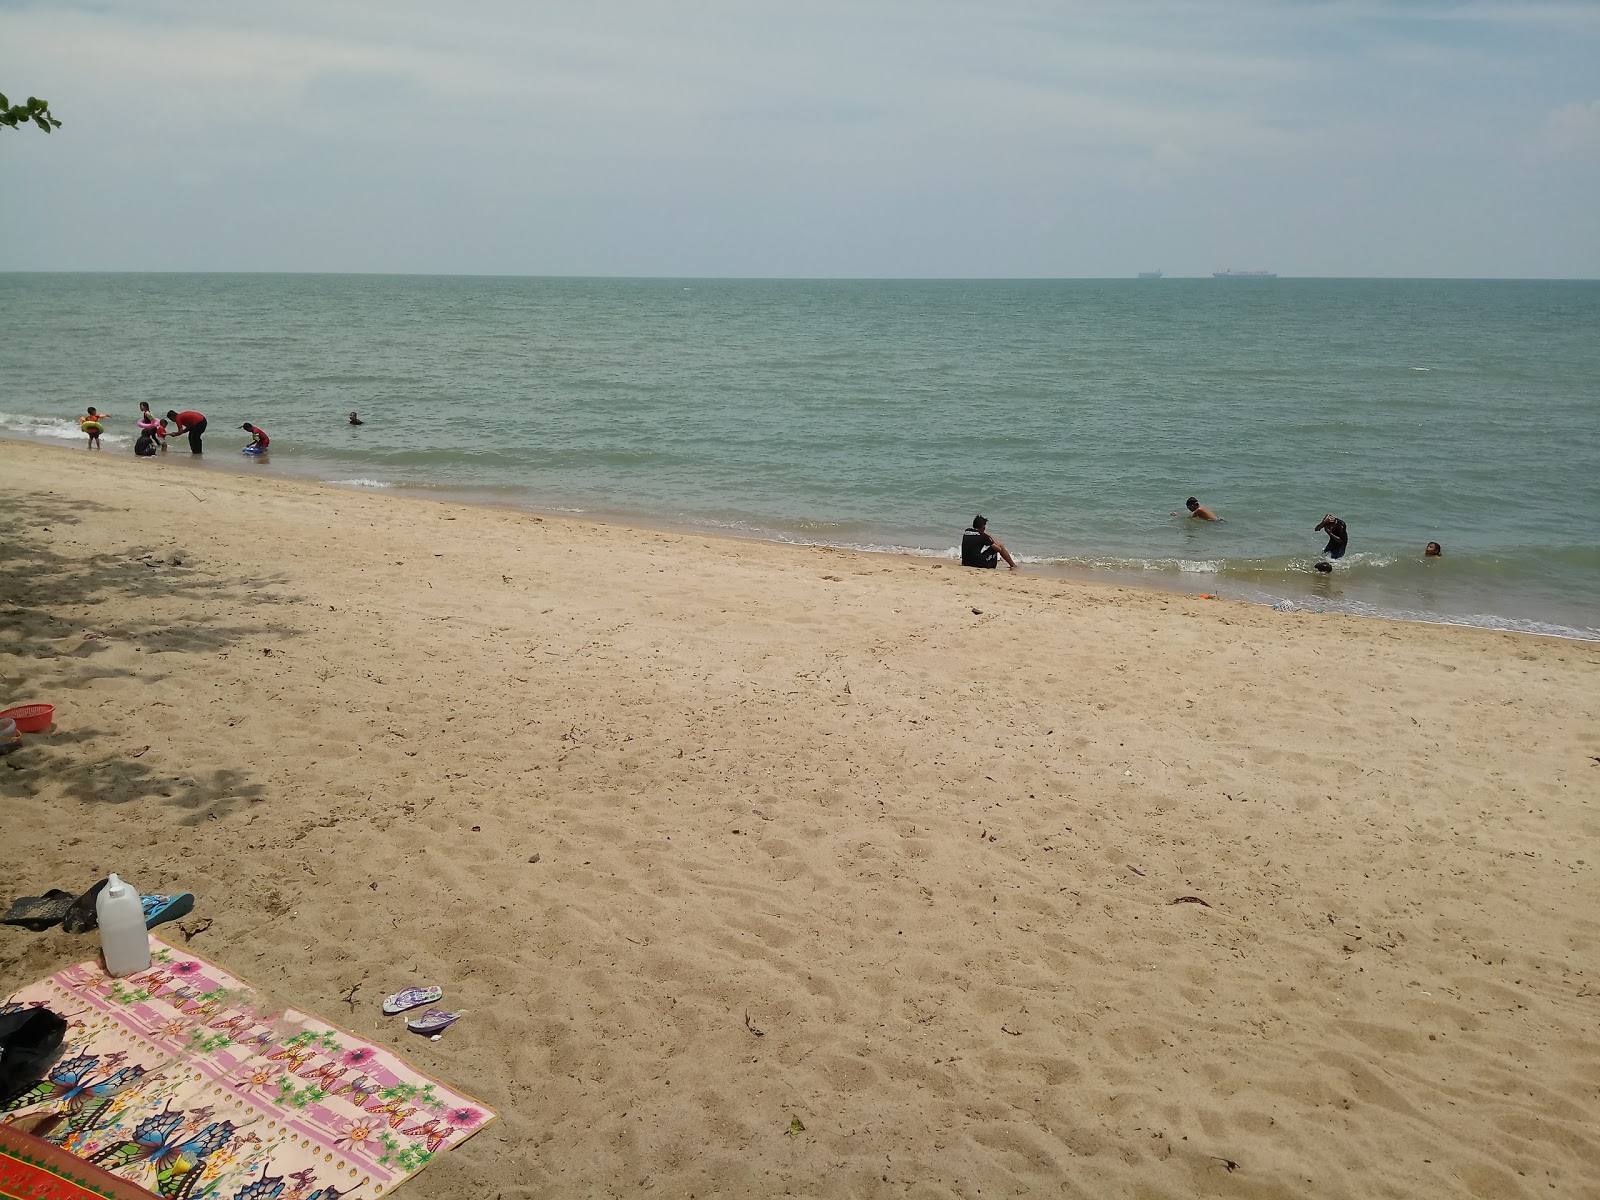 Zdjęcie Sg. Tuang Beach z poziomem czystości głoska bezdźwięczna